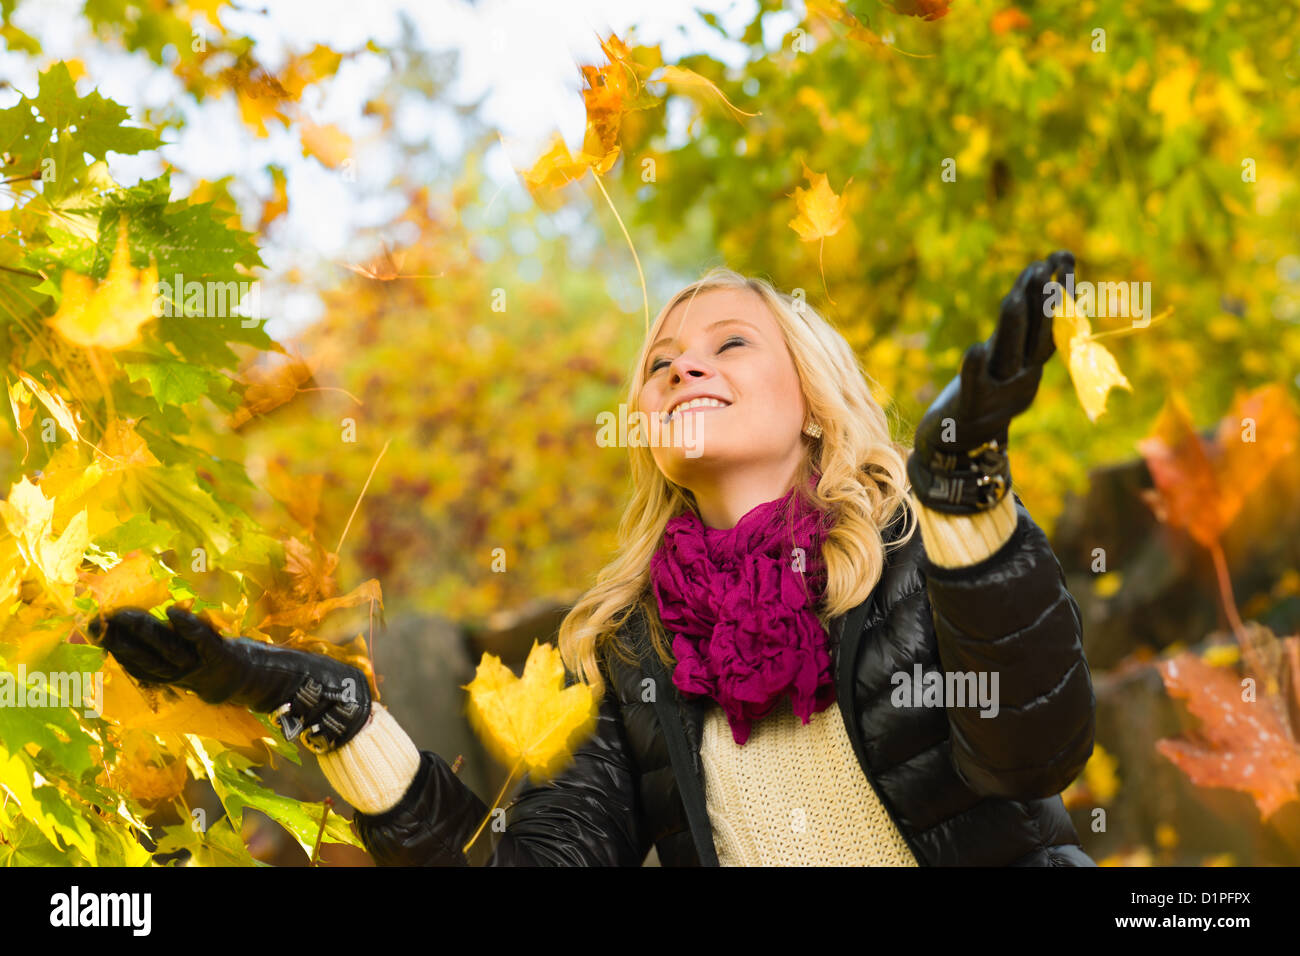 Bella ragazza e foglie che cadono, Colore di autunno, formato con orizzonte di riferimento Foto Stock